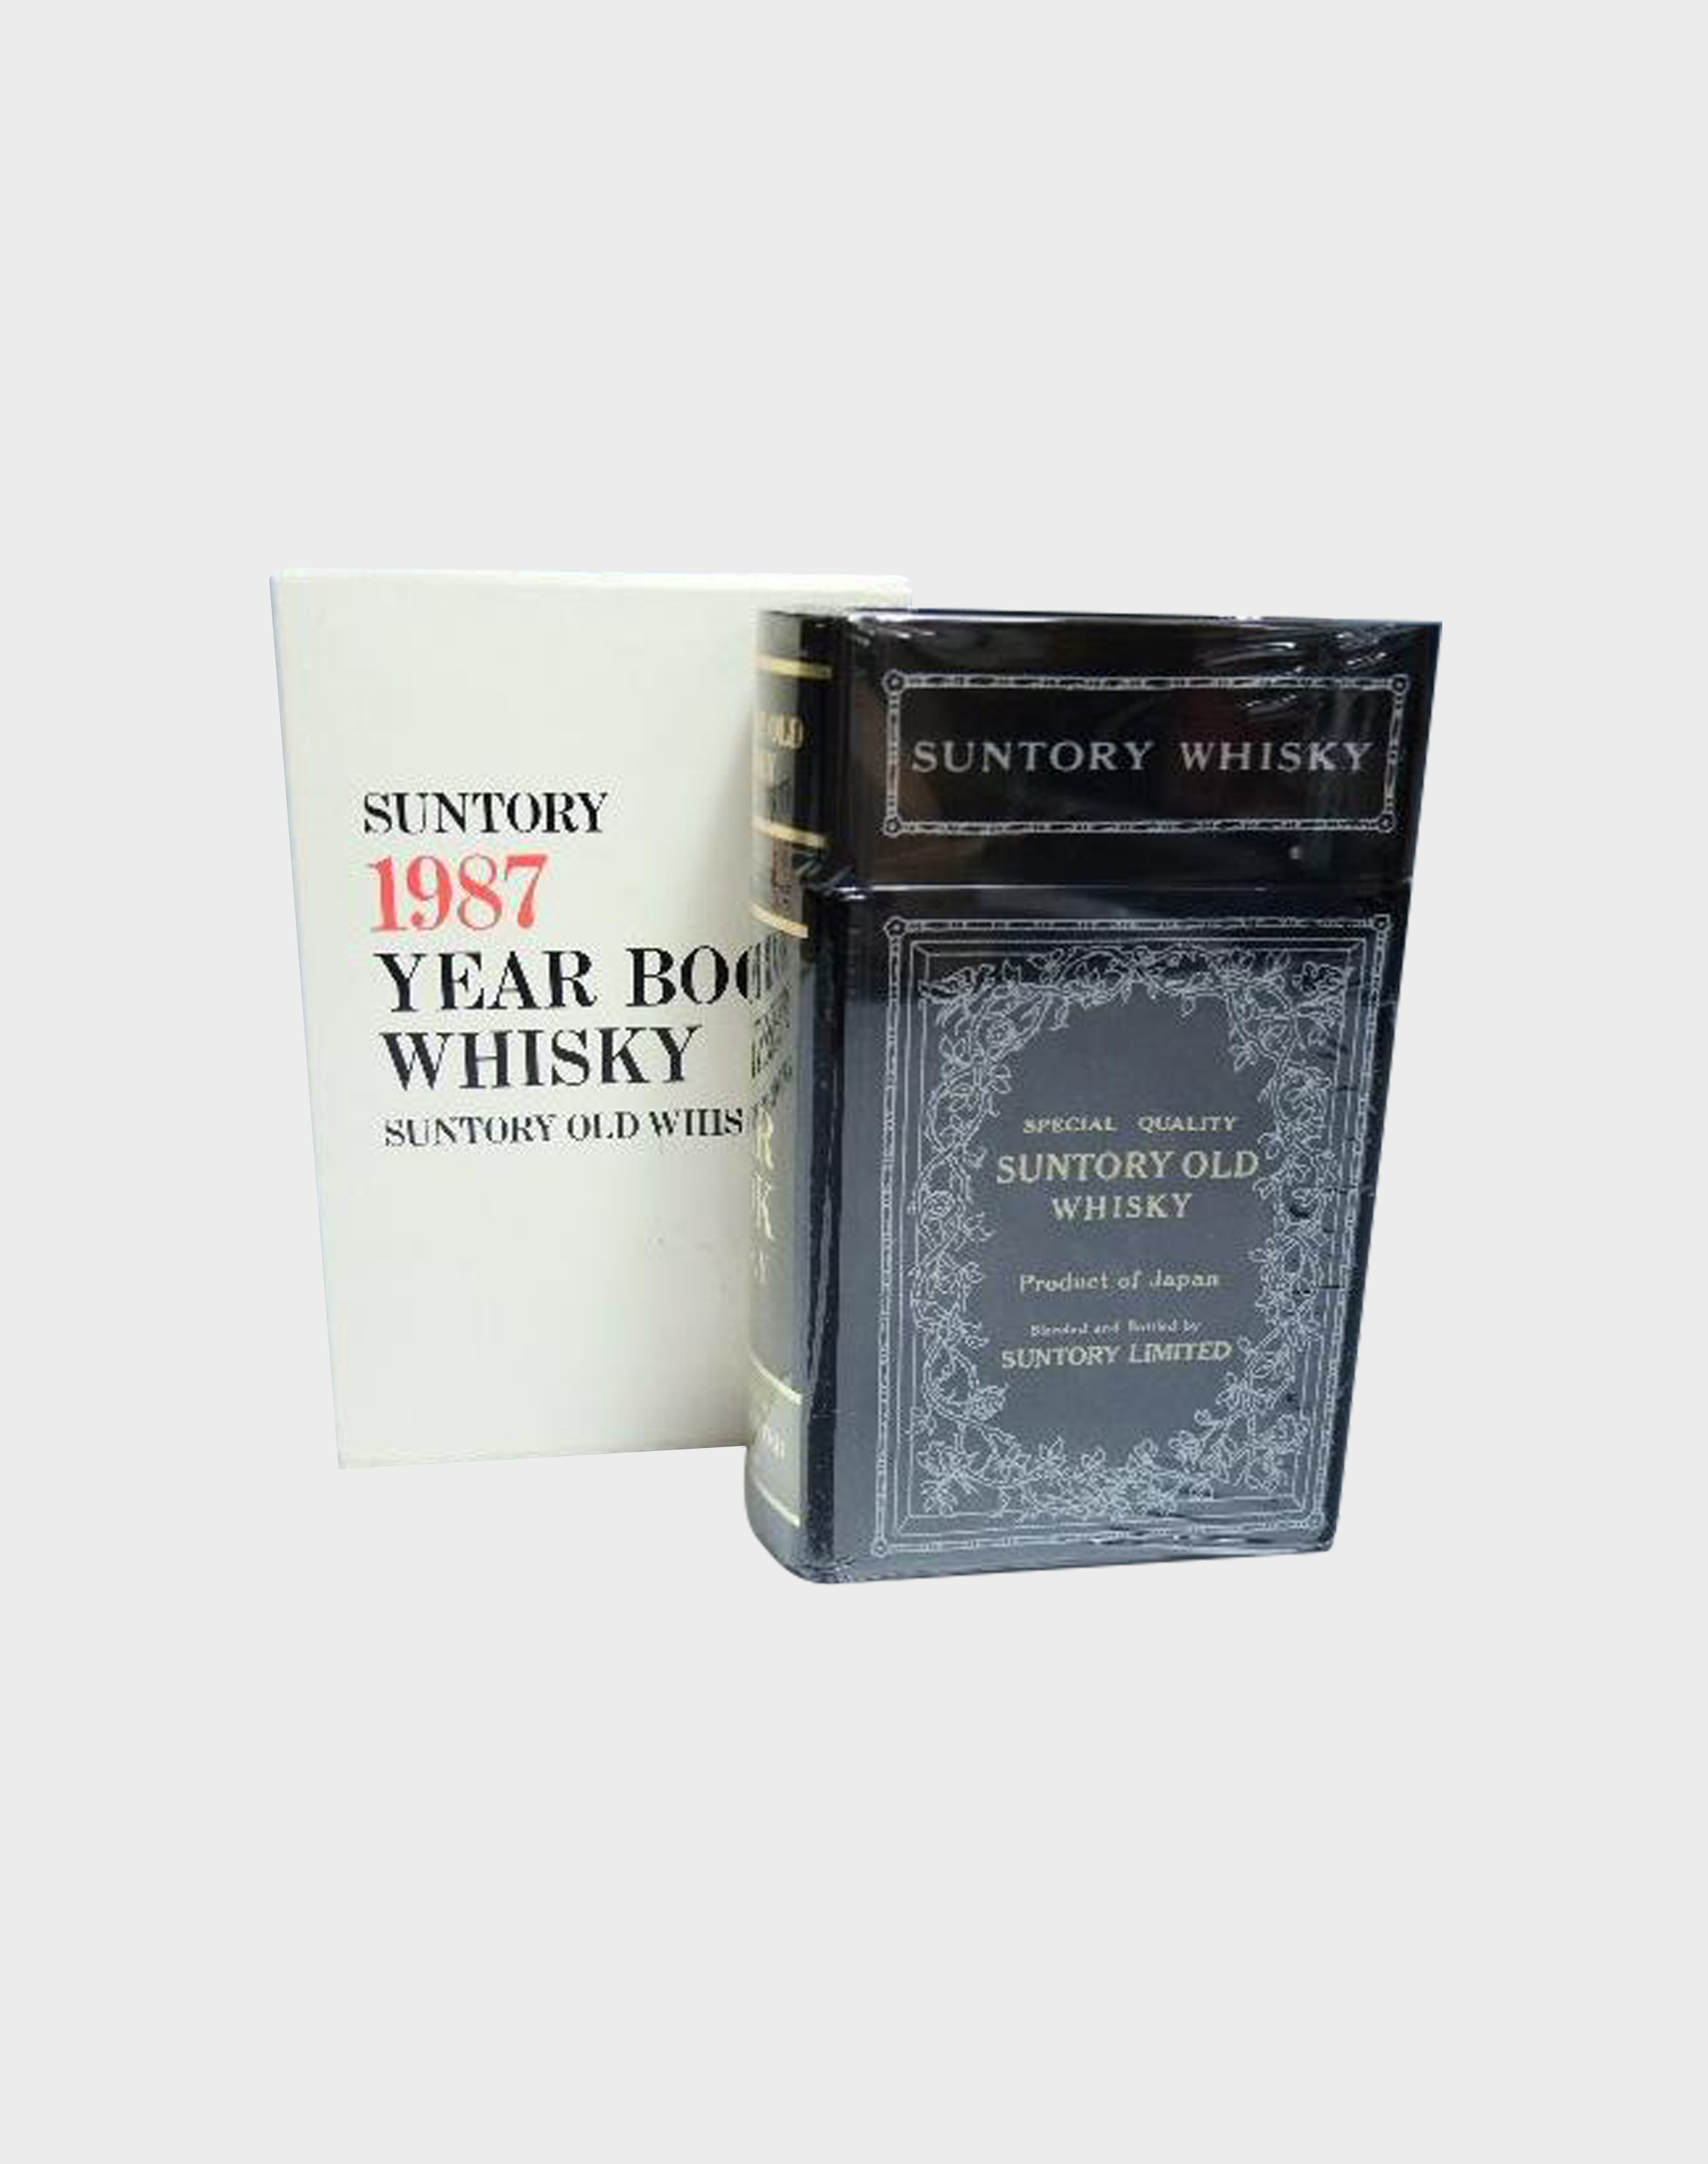 Suntory 1987 Year Book Whisky